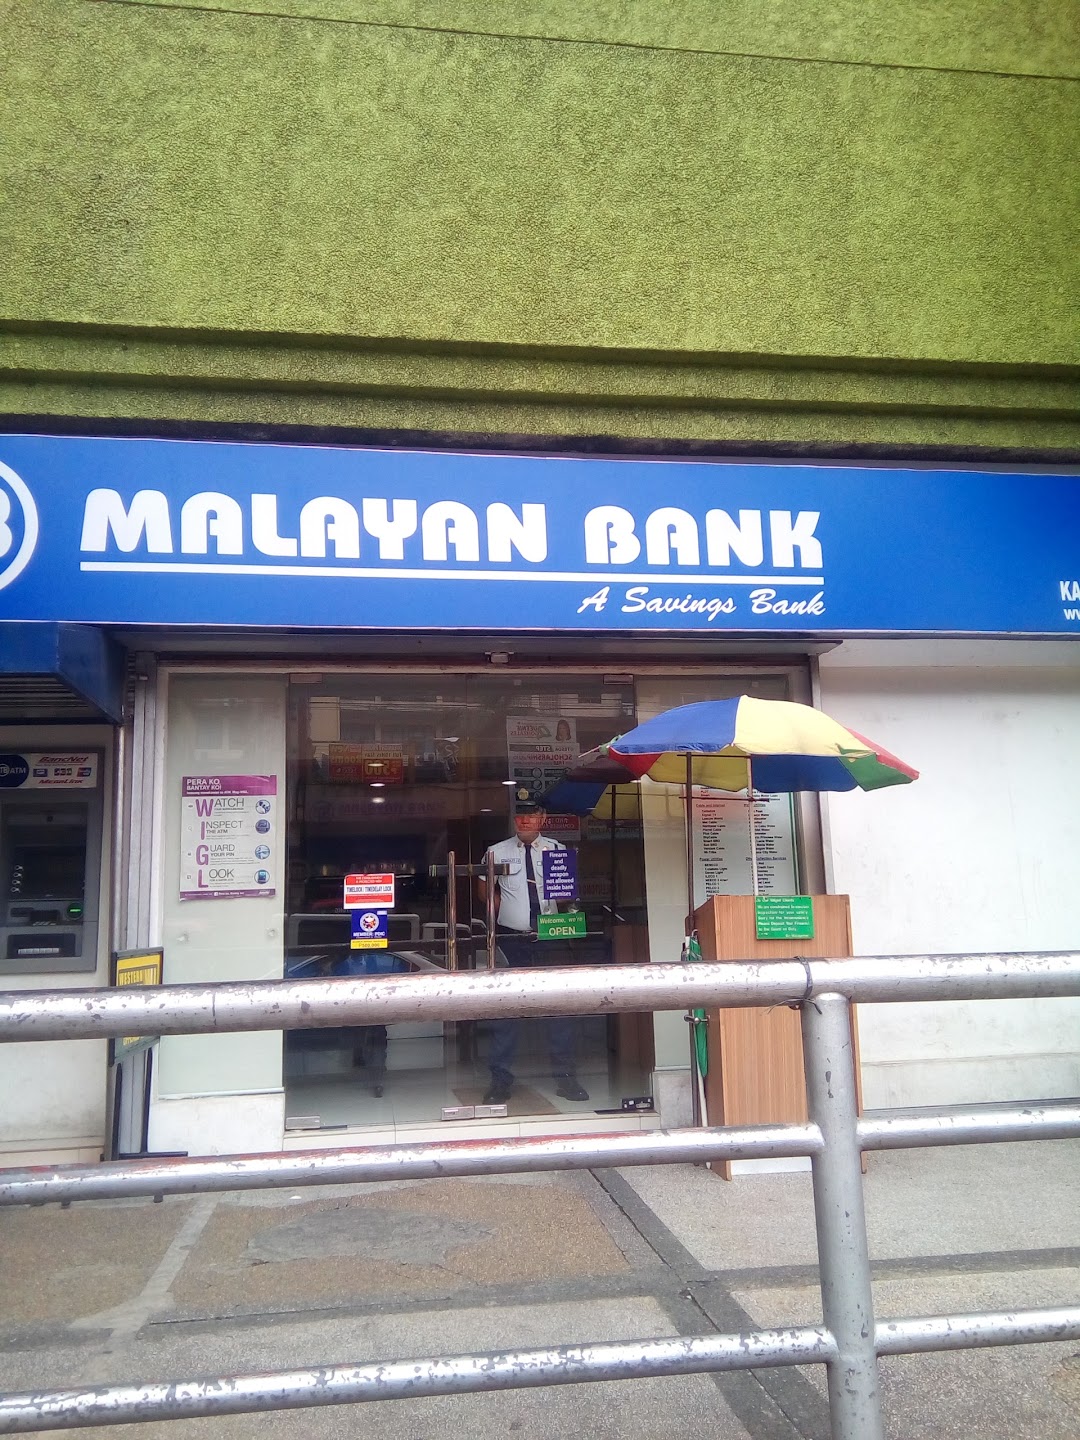 Malayan Bank Savings and Mortgage Bank